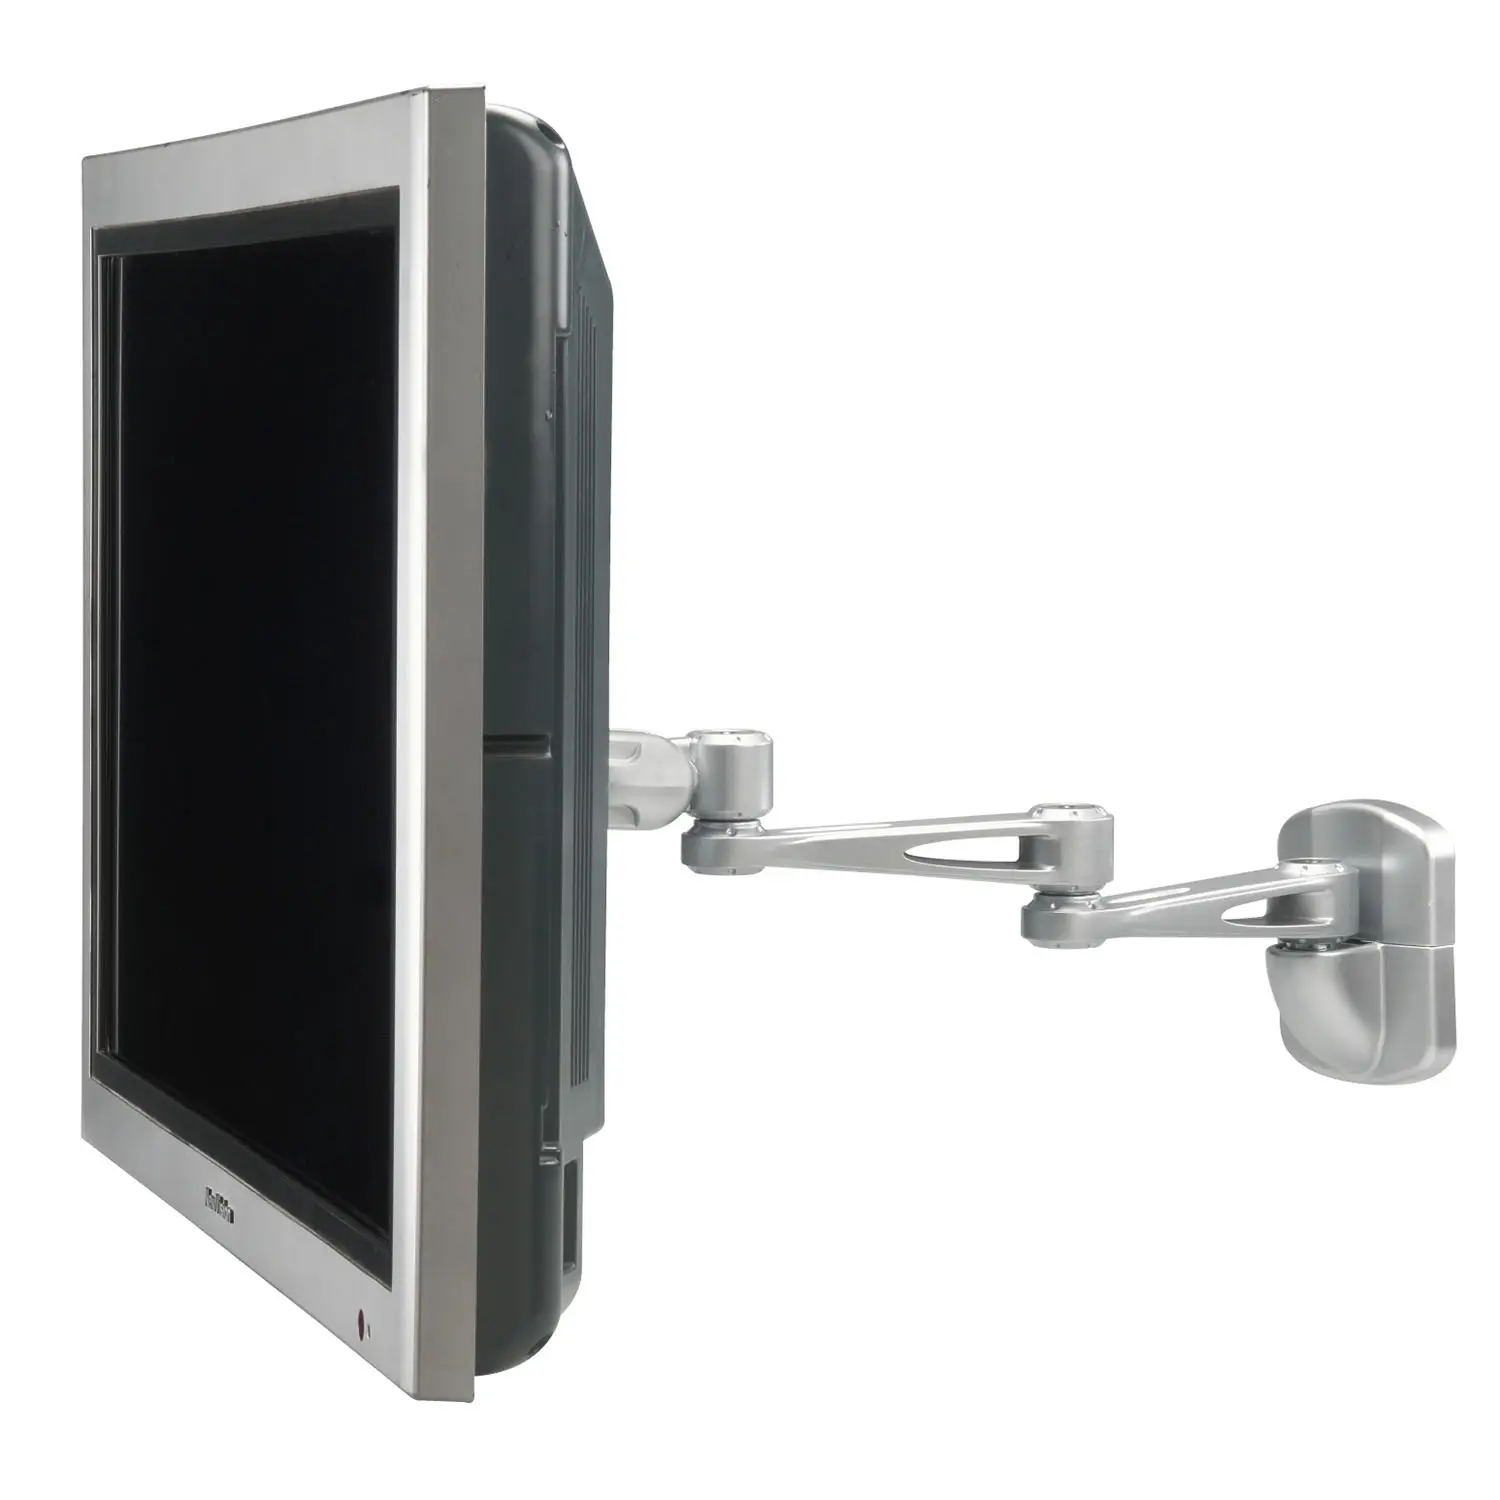 Монитор для ЖК-телевизора с поворотным креплением на стену может наклоняться вниз на 15 градусов и поворачиваться